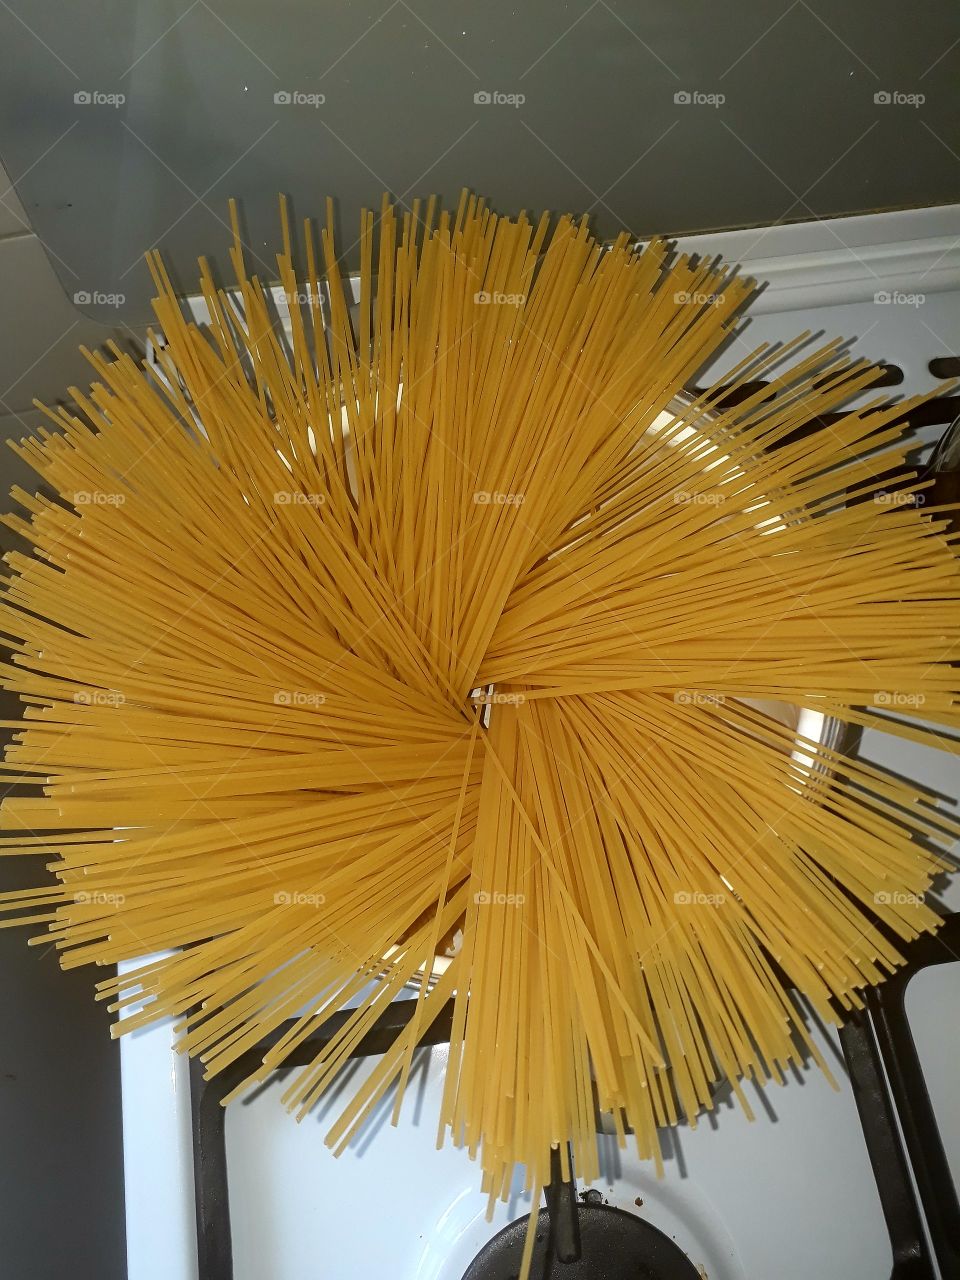 spaghetti in circles of pan